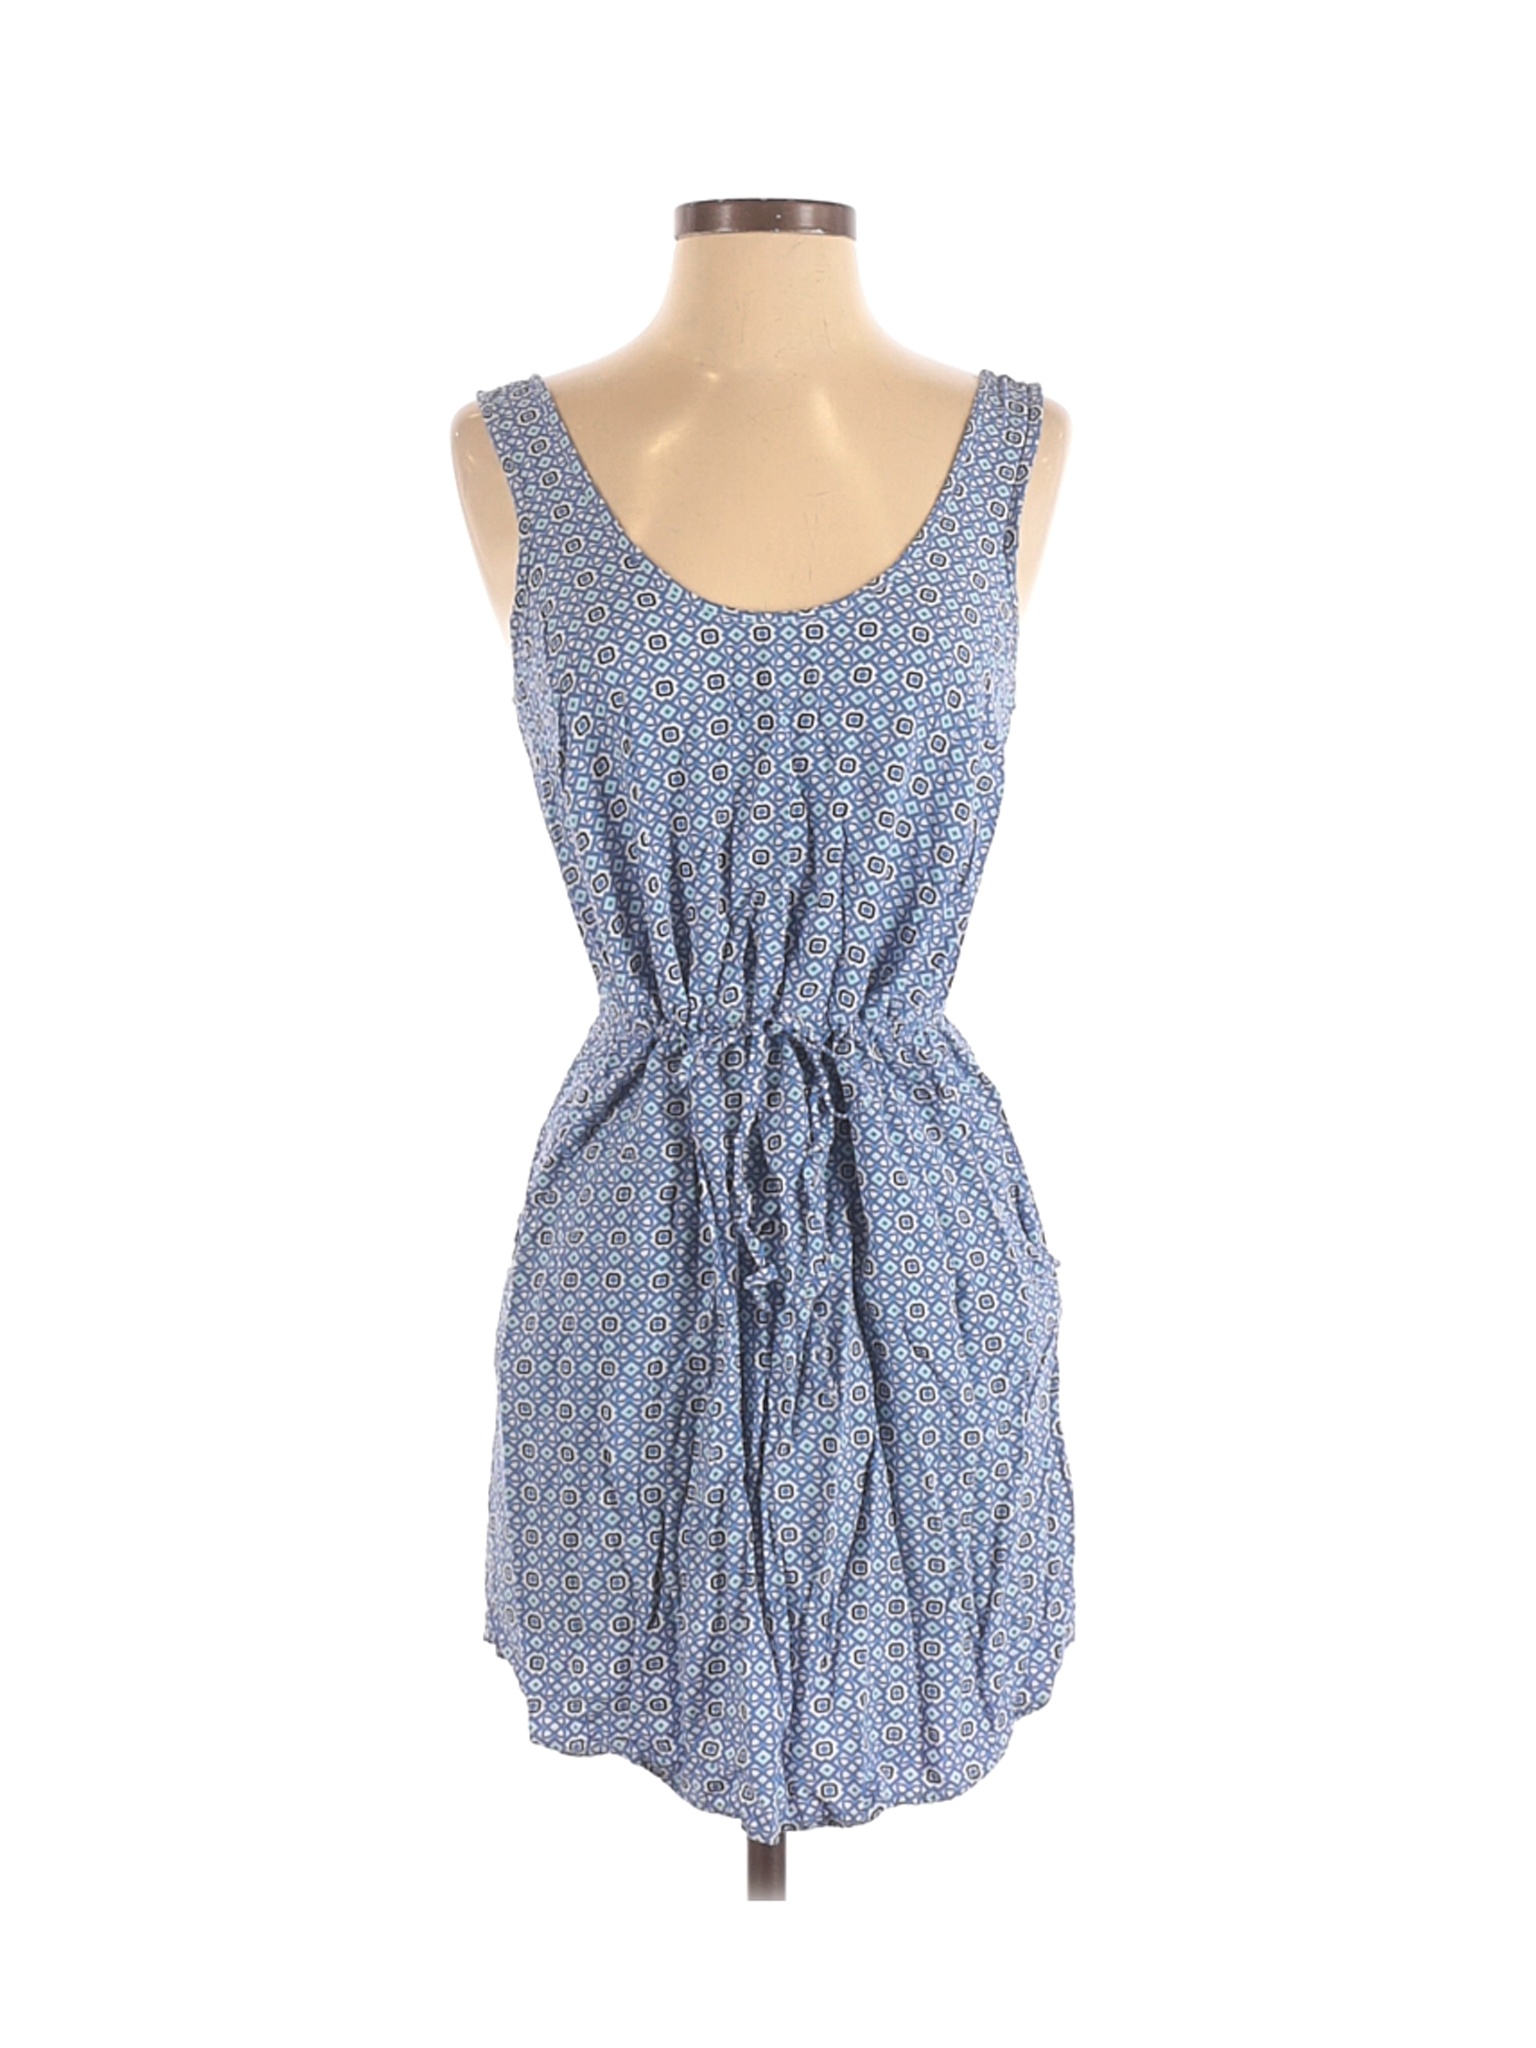 Gap Outlet Women Blue Casual Dress S | eBay